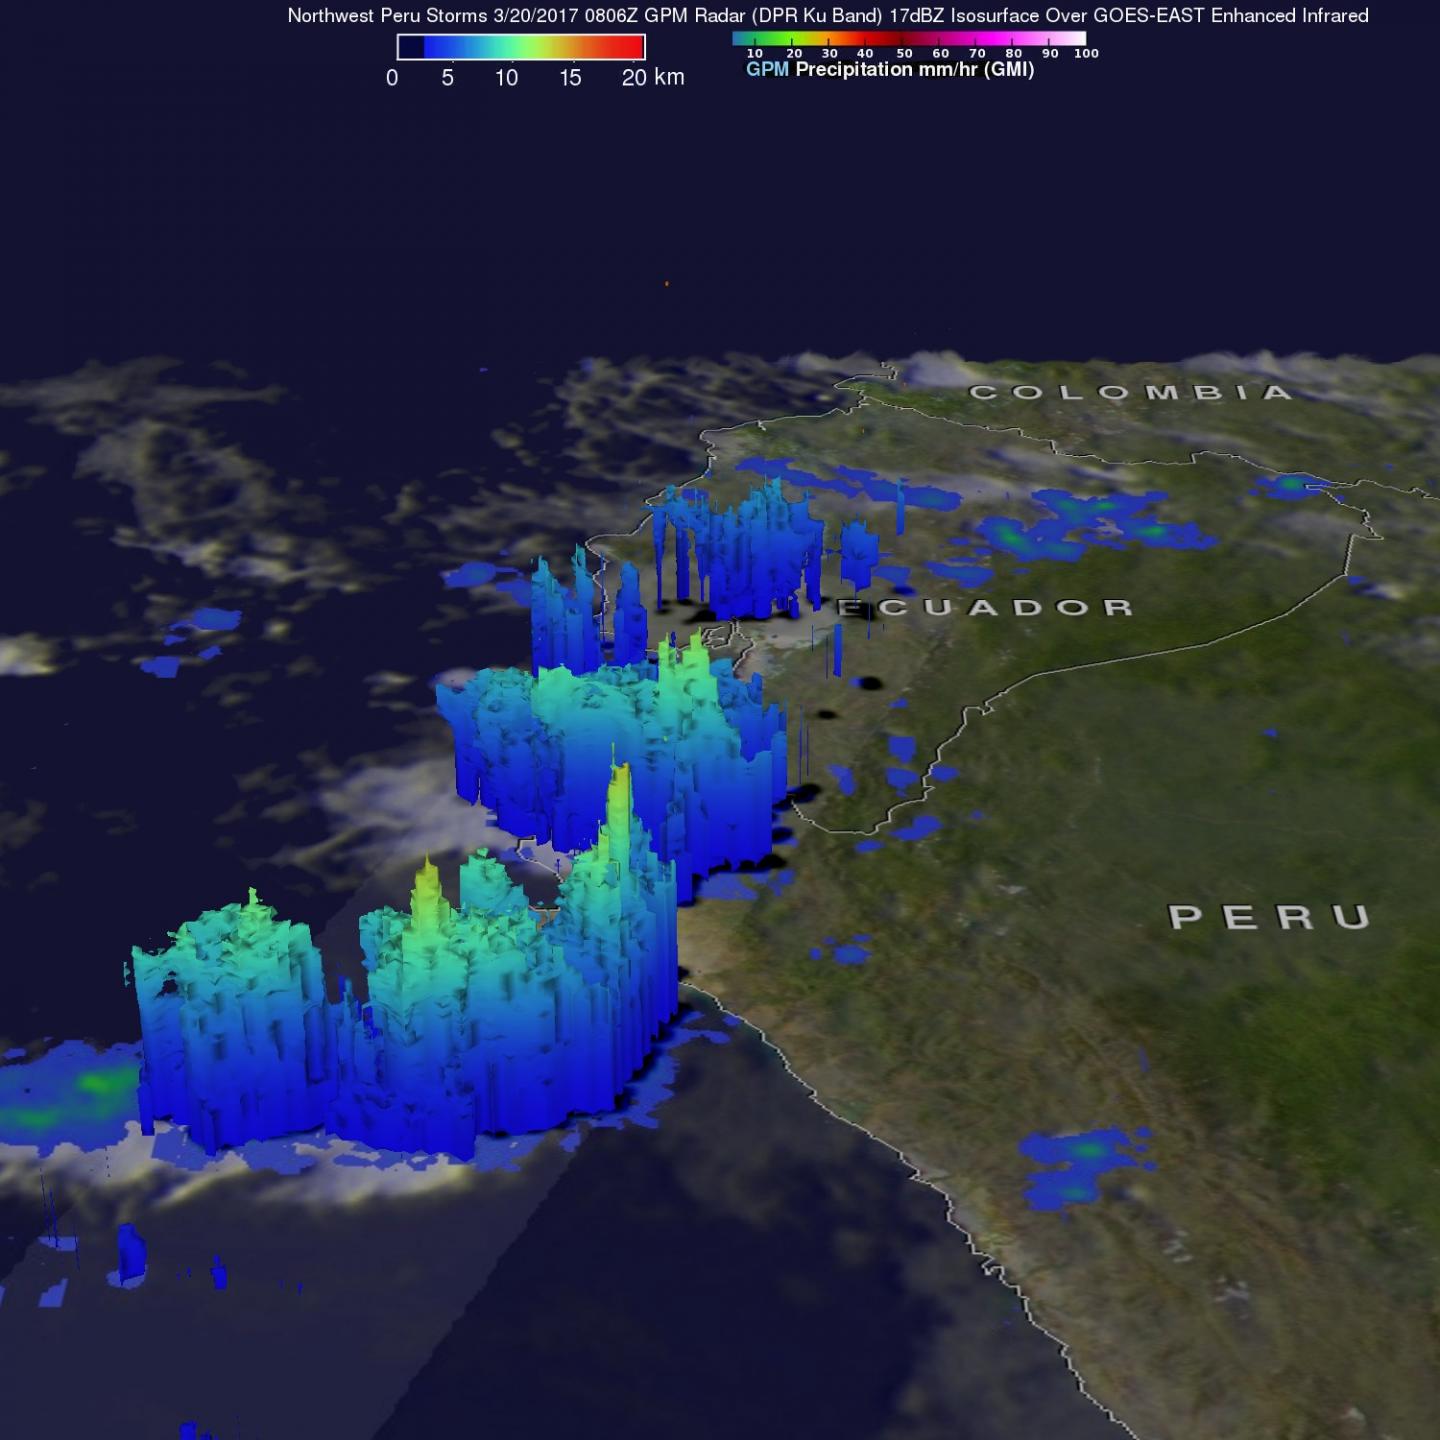 GPM Image of Peru Rainfall